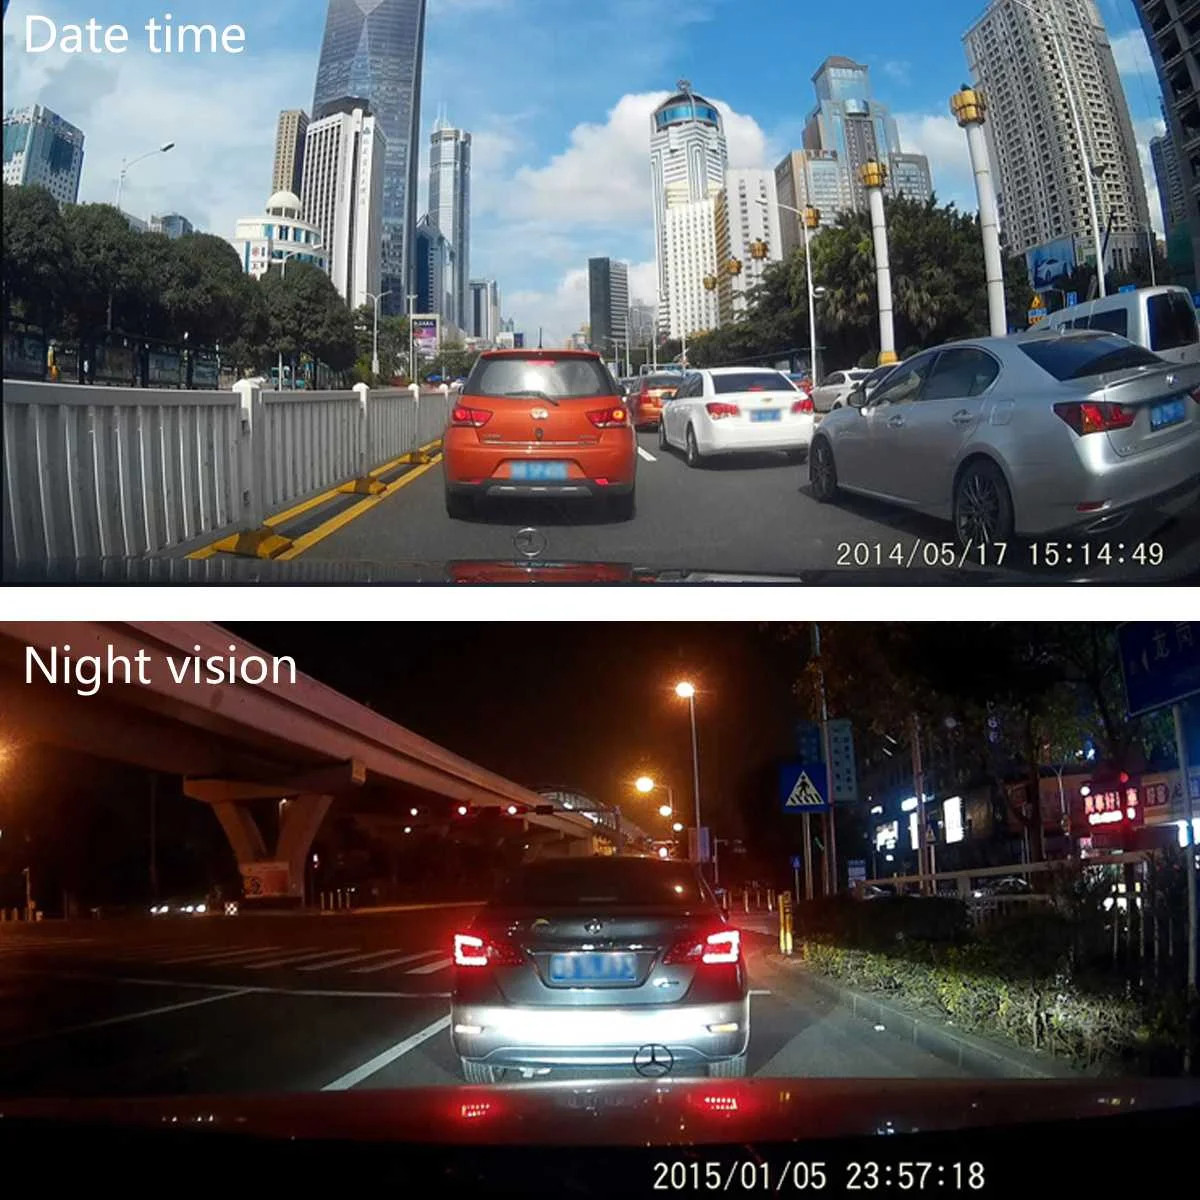 Новинка 4,0 дюймов 720P Автомобильное зеркало заднего вида Dash DVR видео рекордер объектив камера монитор ночного видения 140 широкоугольный для вождения Recoder